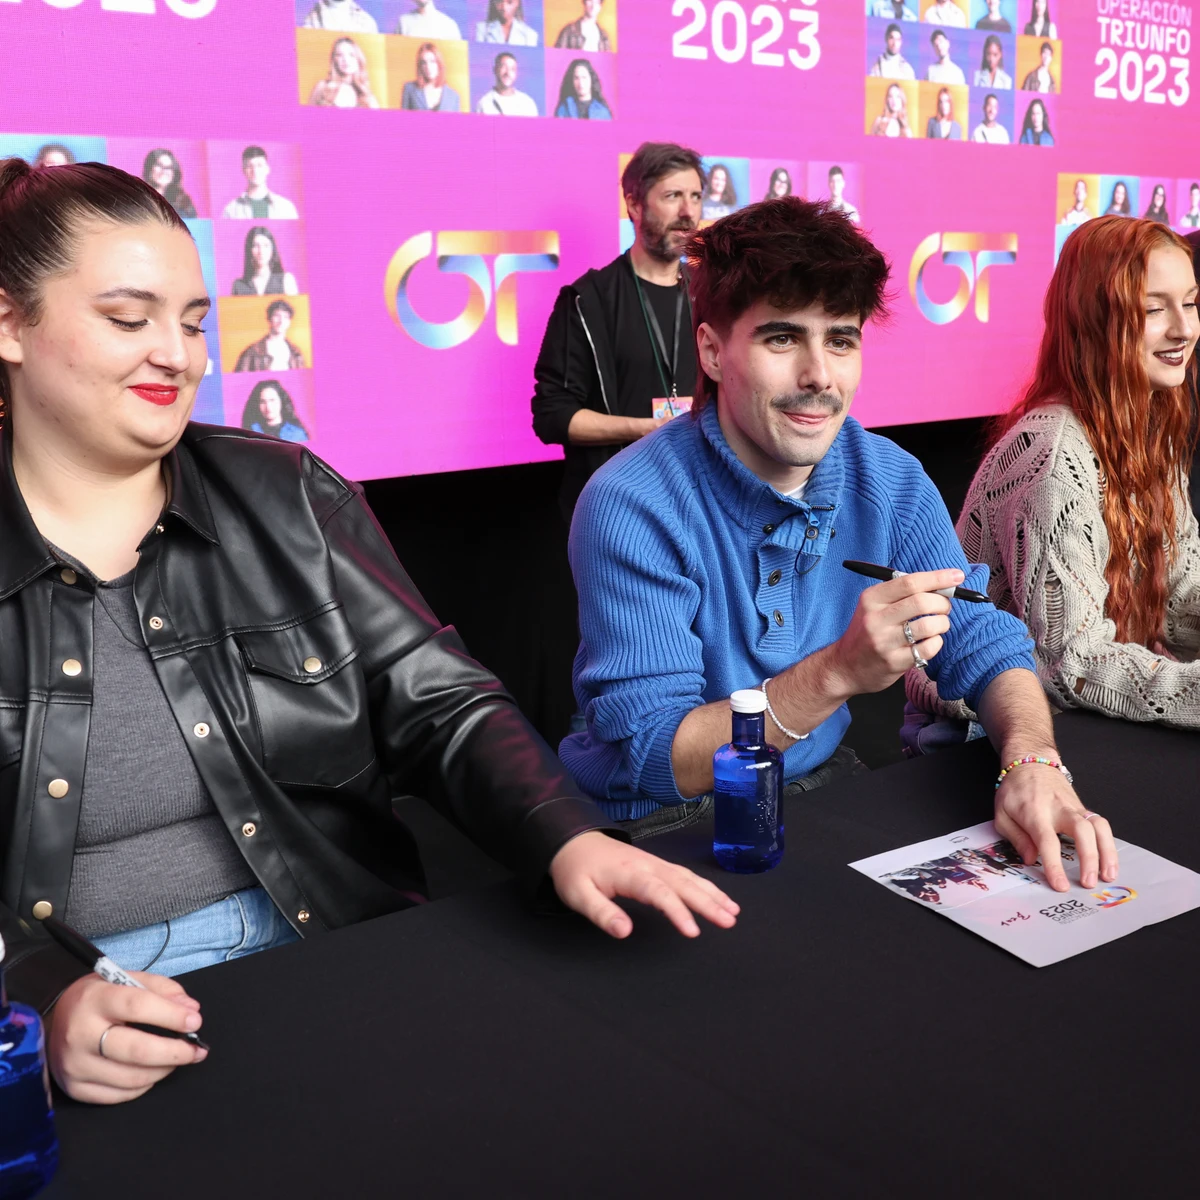 Denna y Violeta en Granada: 'OT 2023' anuncia nuevas firmas de discos con  parada en la capital granadina